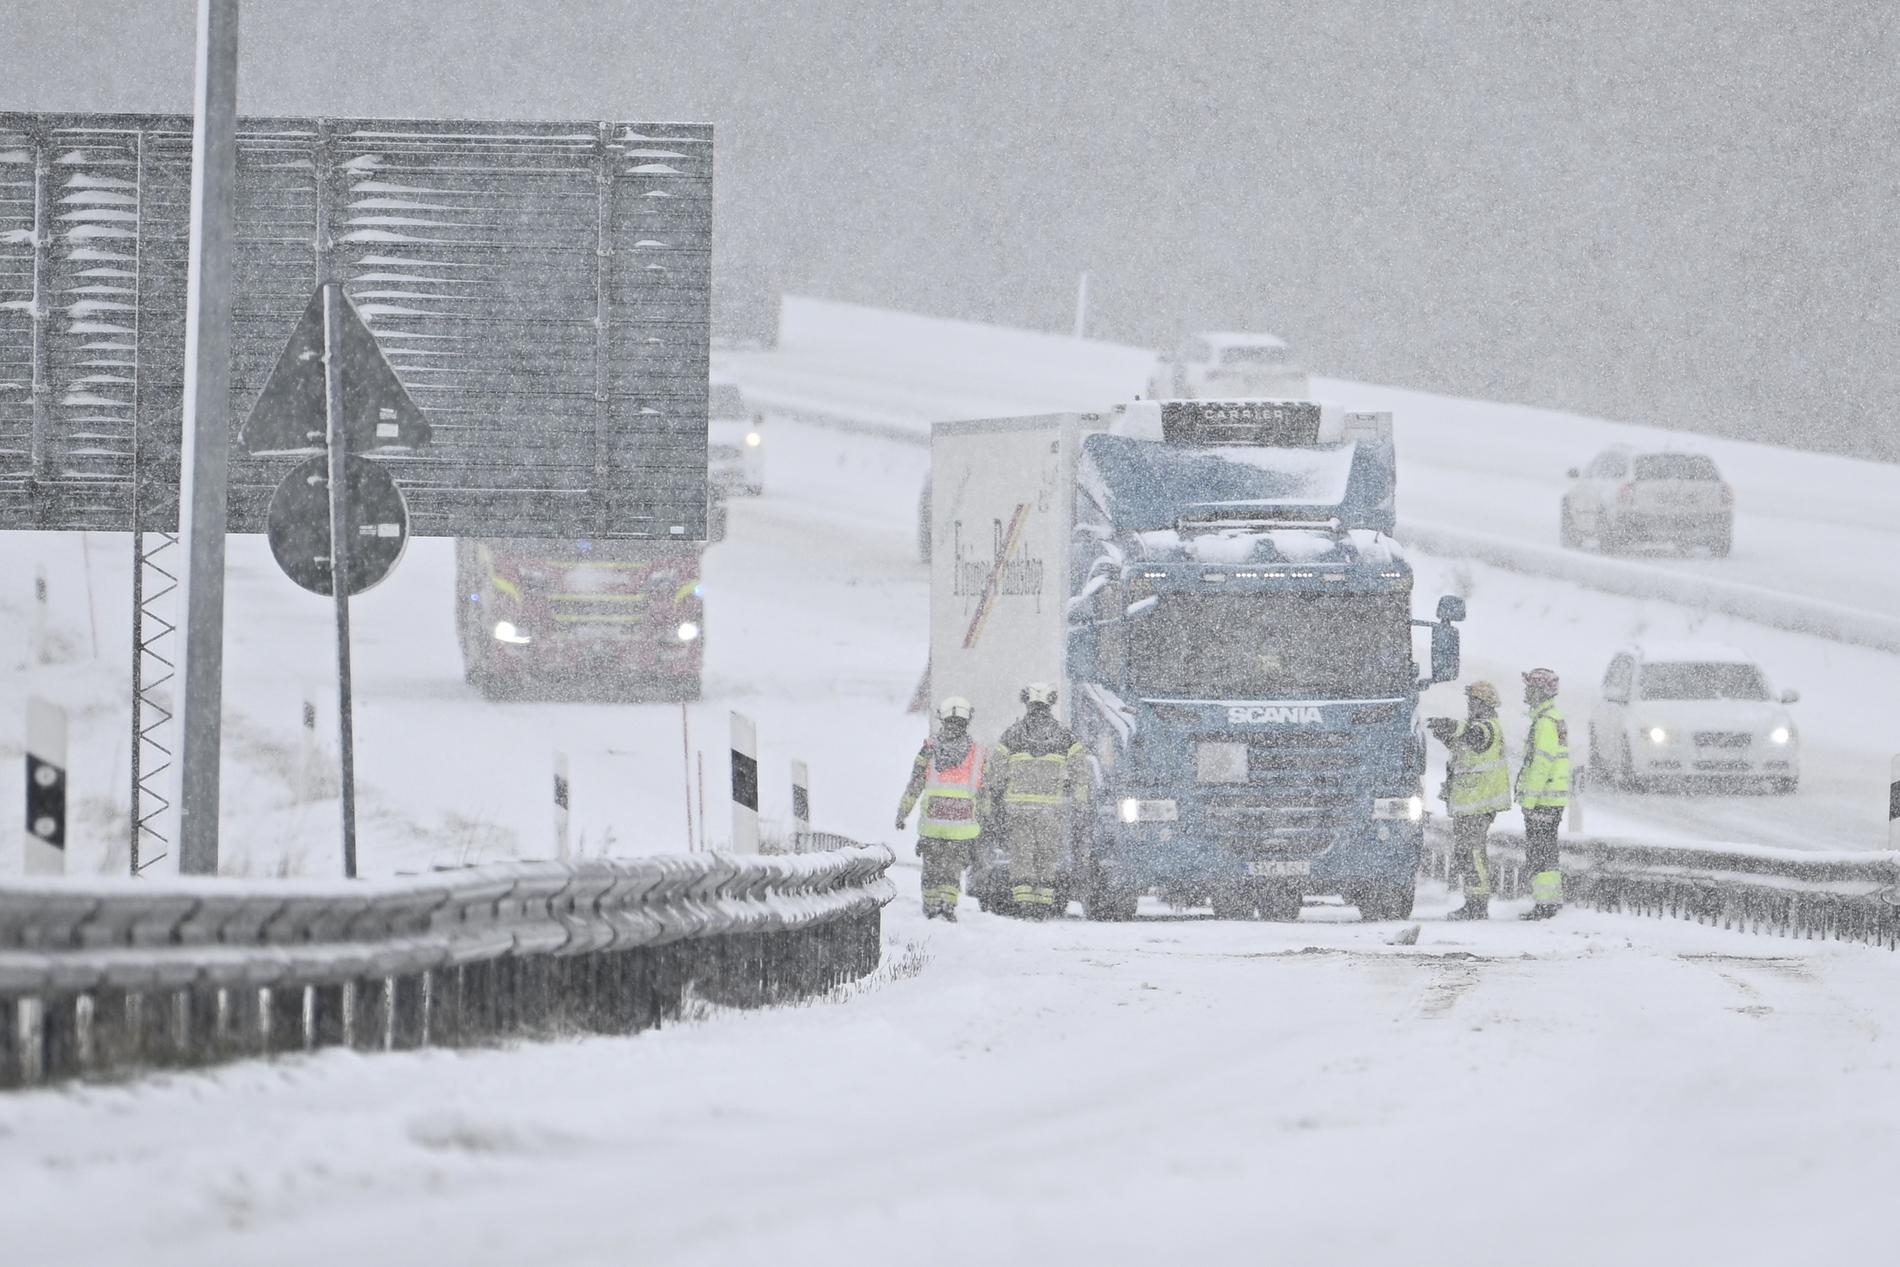 Många lastbilar har ställt till med störningar i trafiken på grund av det hala väglaget, enligt Fredrik Björnberg, vakthavande räddningschef i Jönköping. Arkivbild.